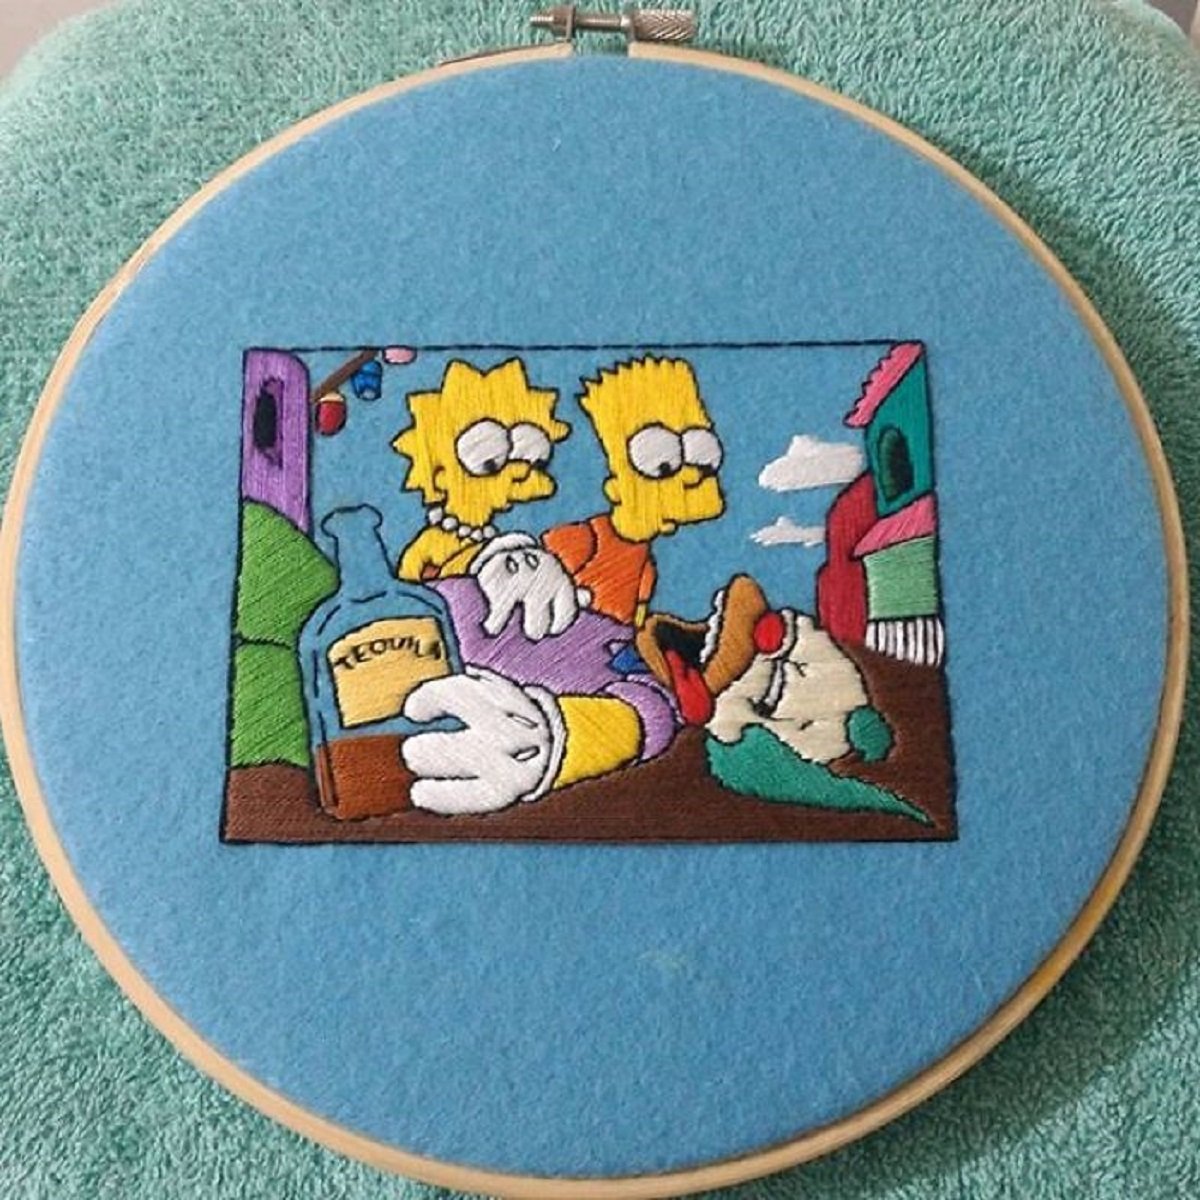 Artista Gabriela Martinez cria bordados de cenas de Os Simpsons 29